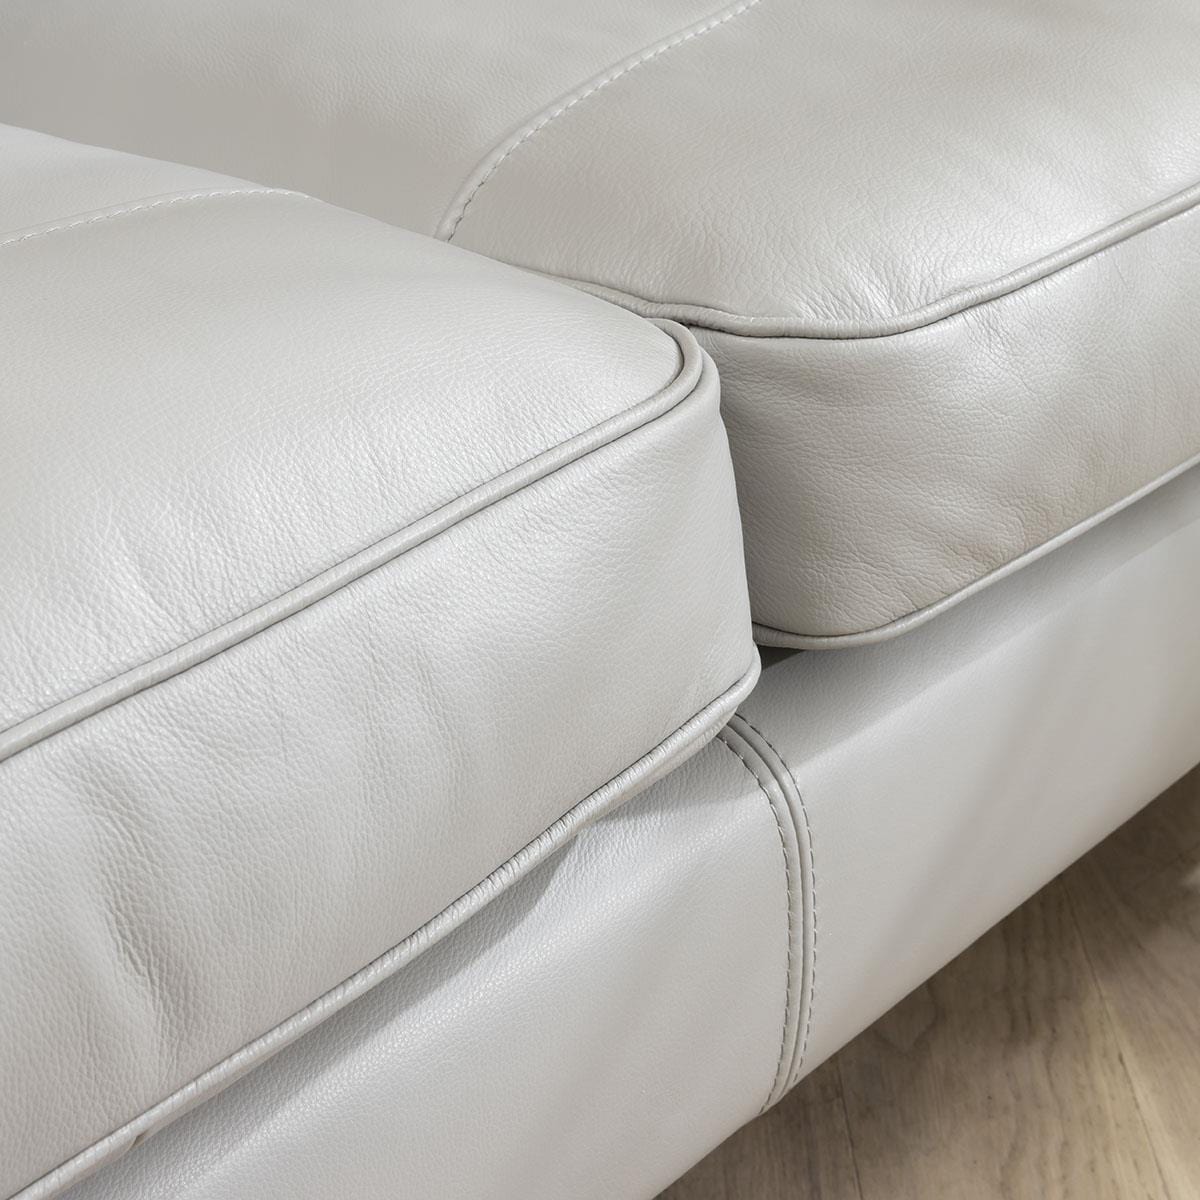 Quatropi Quatropi 3 Seater Premium Leather Modern Sofa - Real Leather Options - 215cm